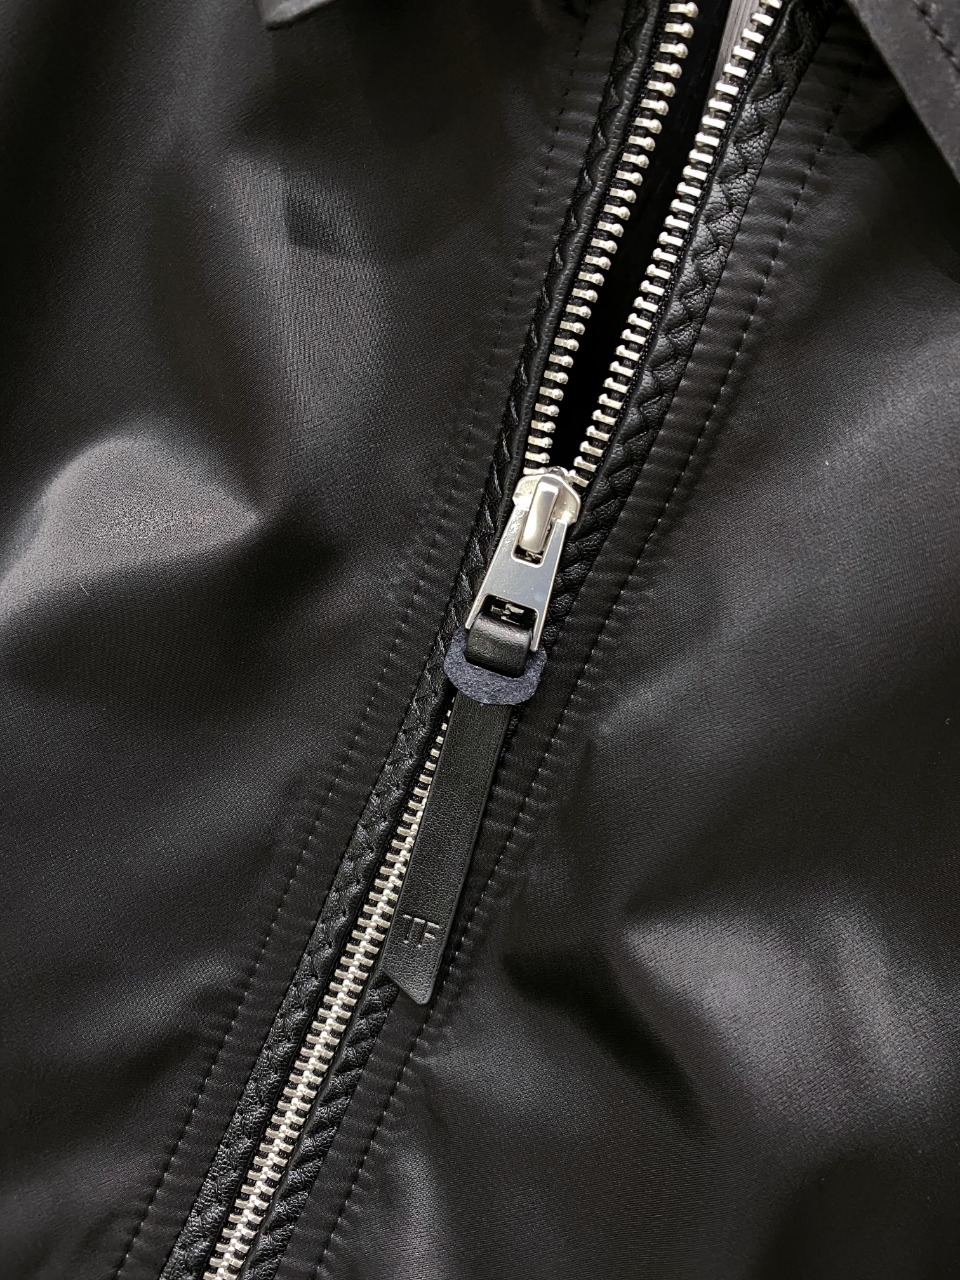 新款TF立领夹克外套穿搭随意切换风格简单又时髦！高端定制复合布面料手感比以往做的要柔软的多舒适度高原厂五